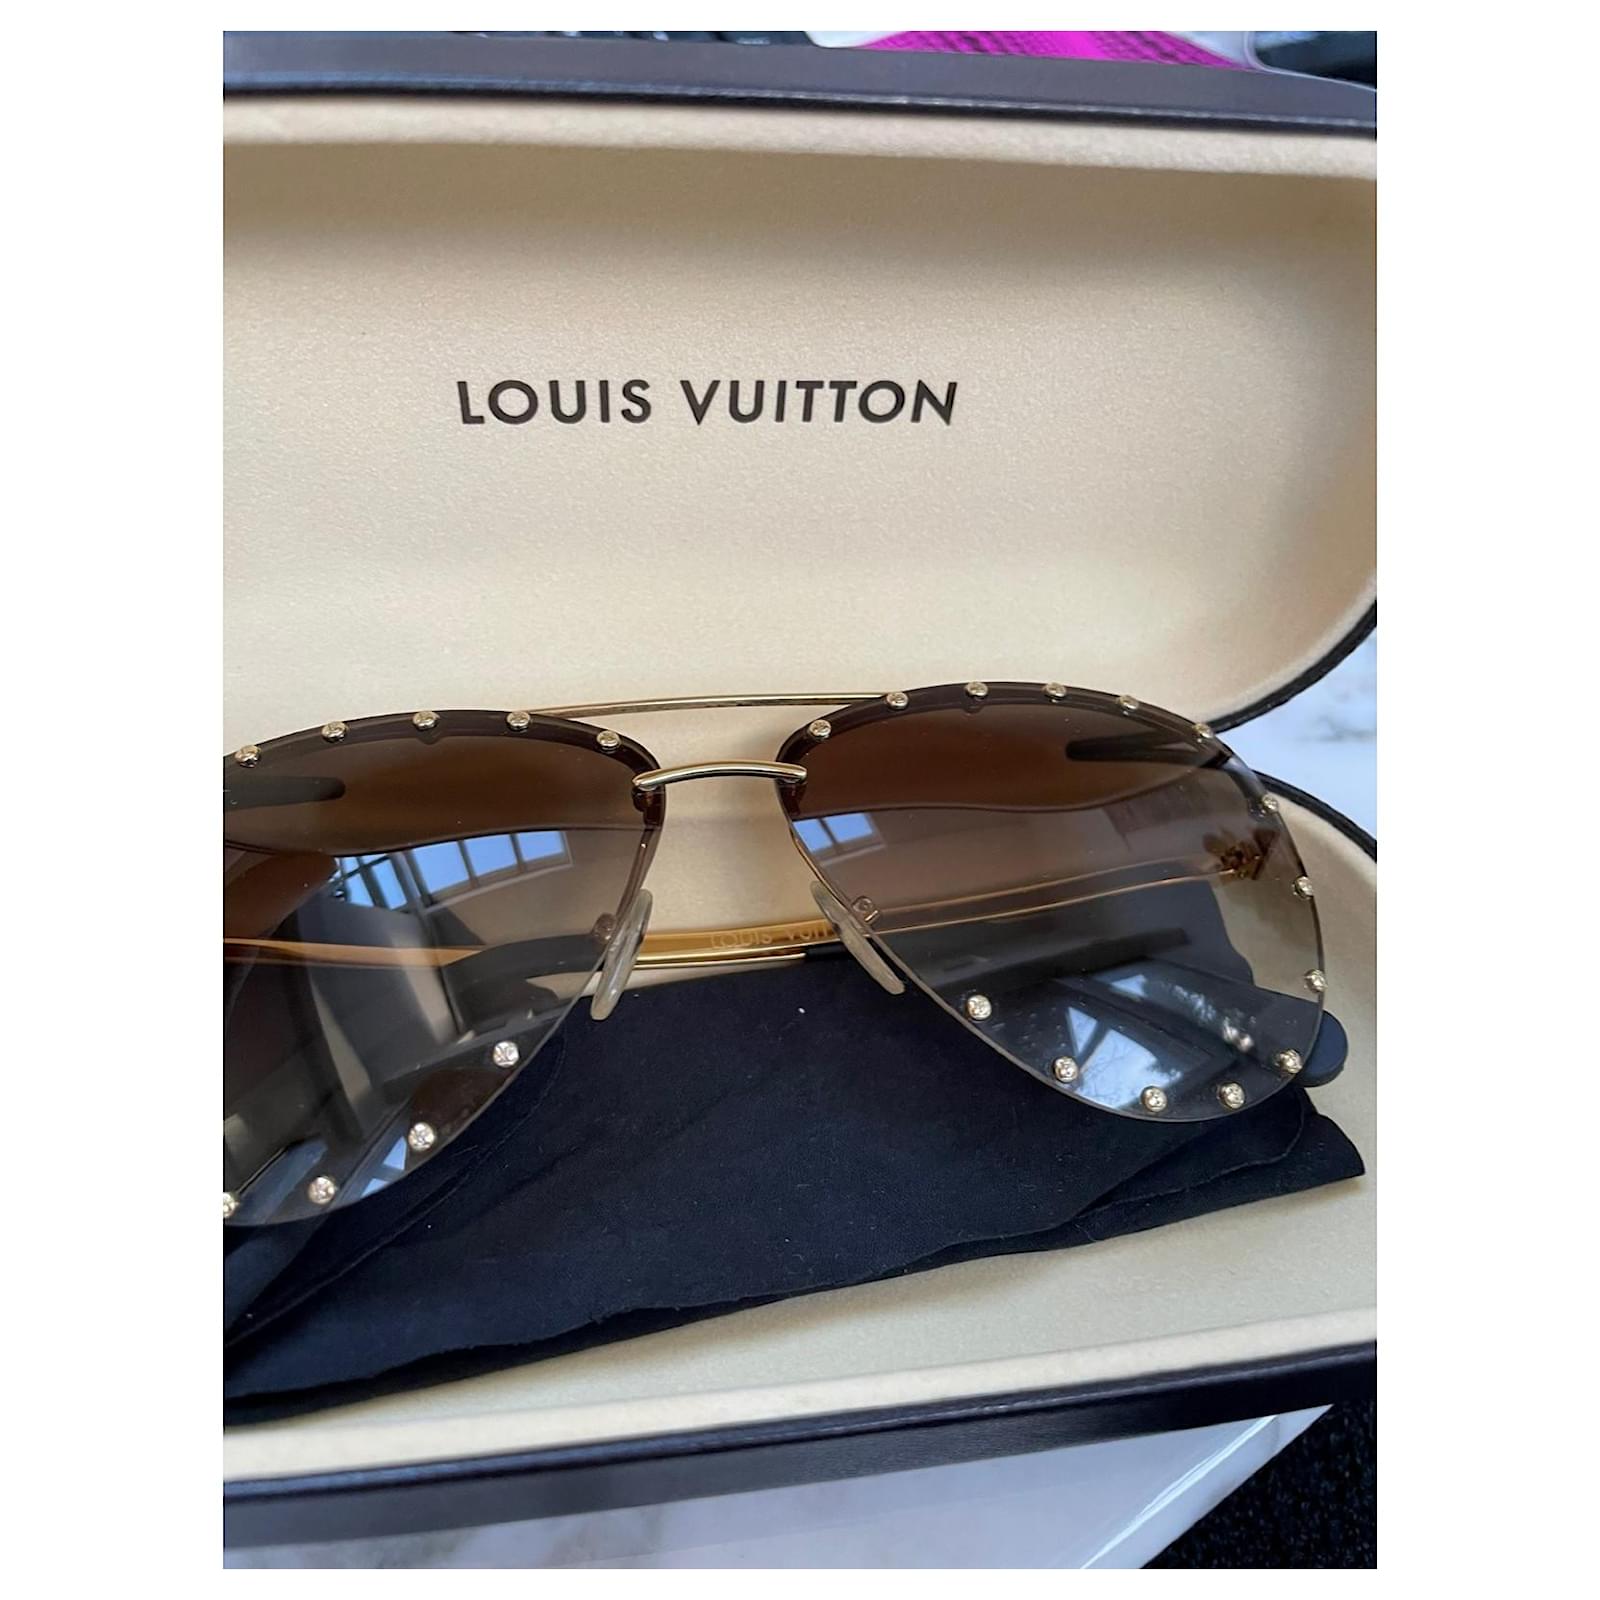 Épinglé sur Louis Vuitton fan